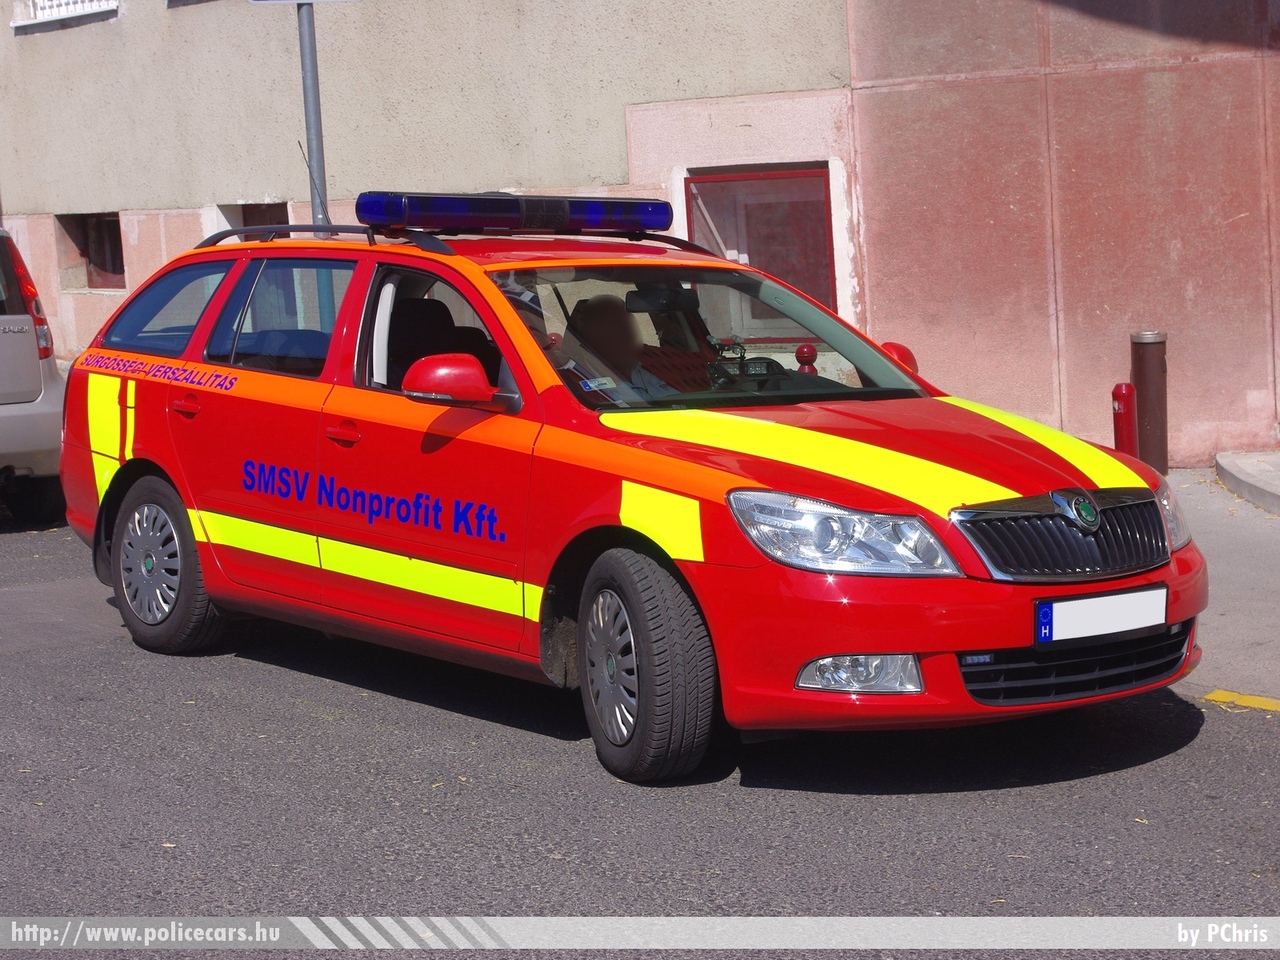 Skoda Octavia II facelift, SMSV, vérszállítás, fotó: PChris
Keywords: mentő mentőautó magyar Magyarország ambulance hungarian Hungary